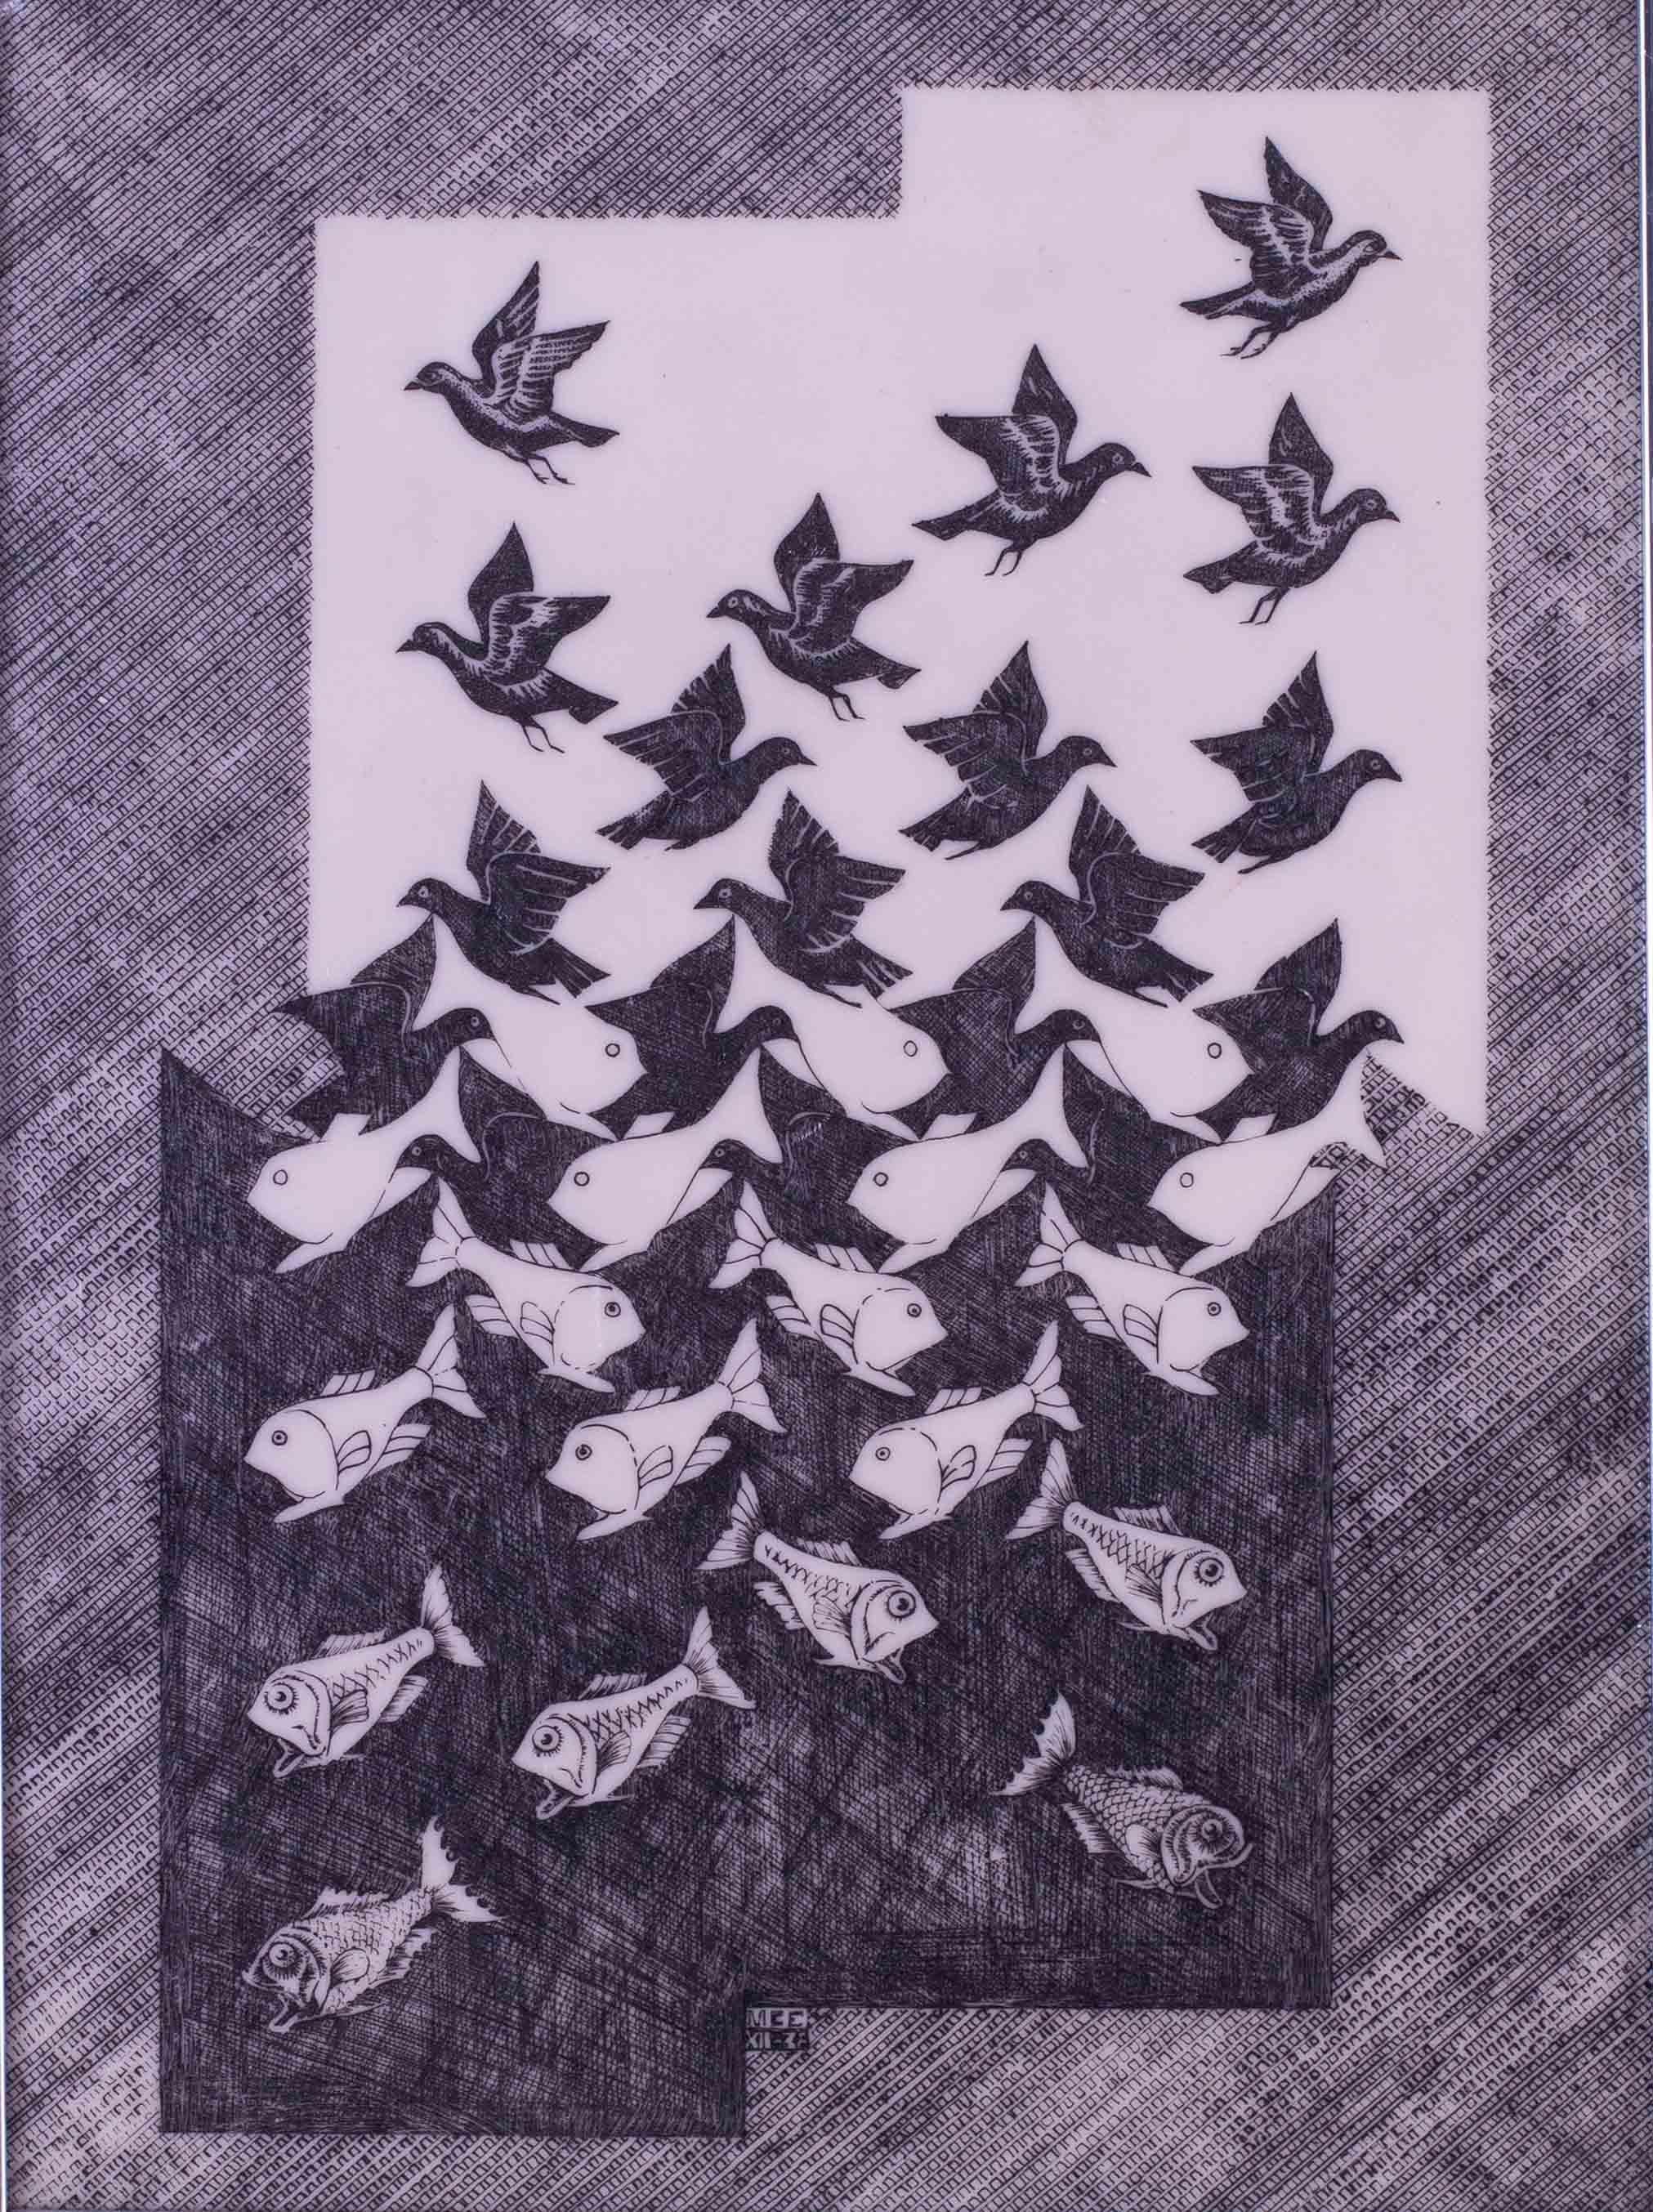 Nach Maurits Cornelis Escher (Niederländer, 1898-1972)
Himmel und Wasser II
Bedrucktes Vinyl
Eine Kopie des Originals von 1938 aus den 1960er Jahren
21 x 17 Zoll (53,5 x 43 cm) bis zum äußeren Rahmenrand
